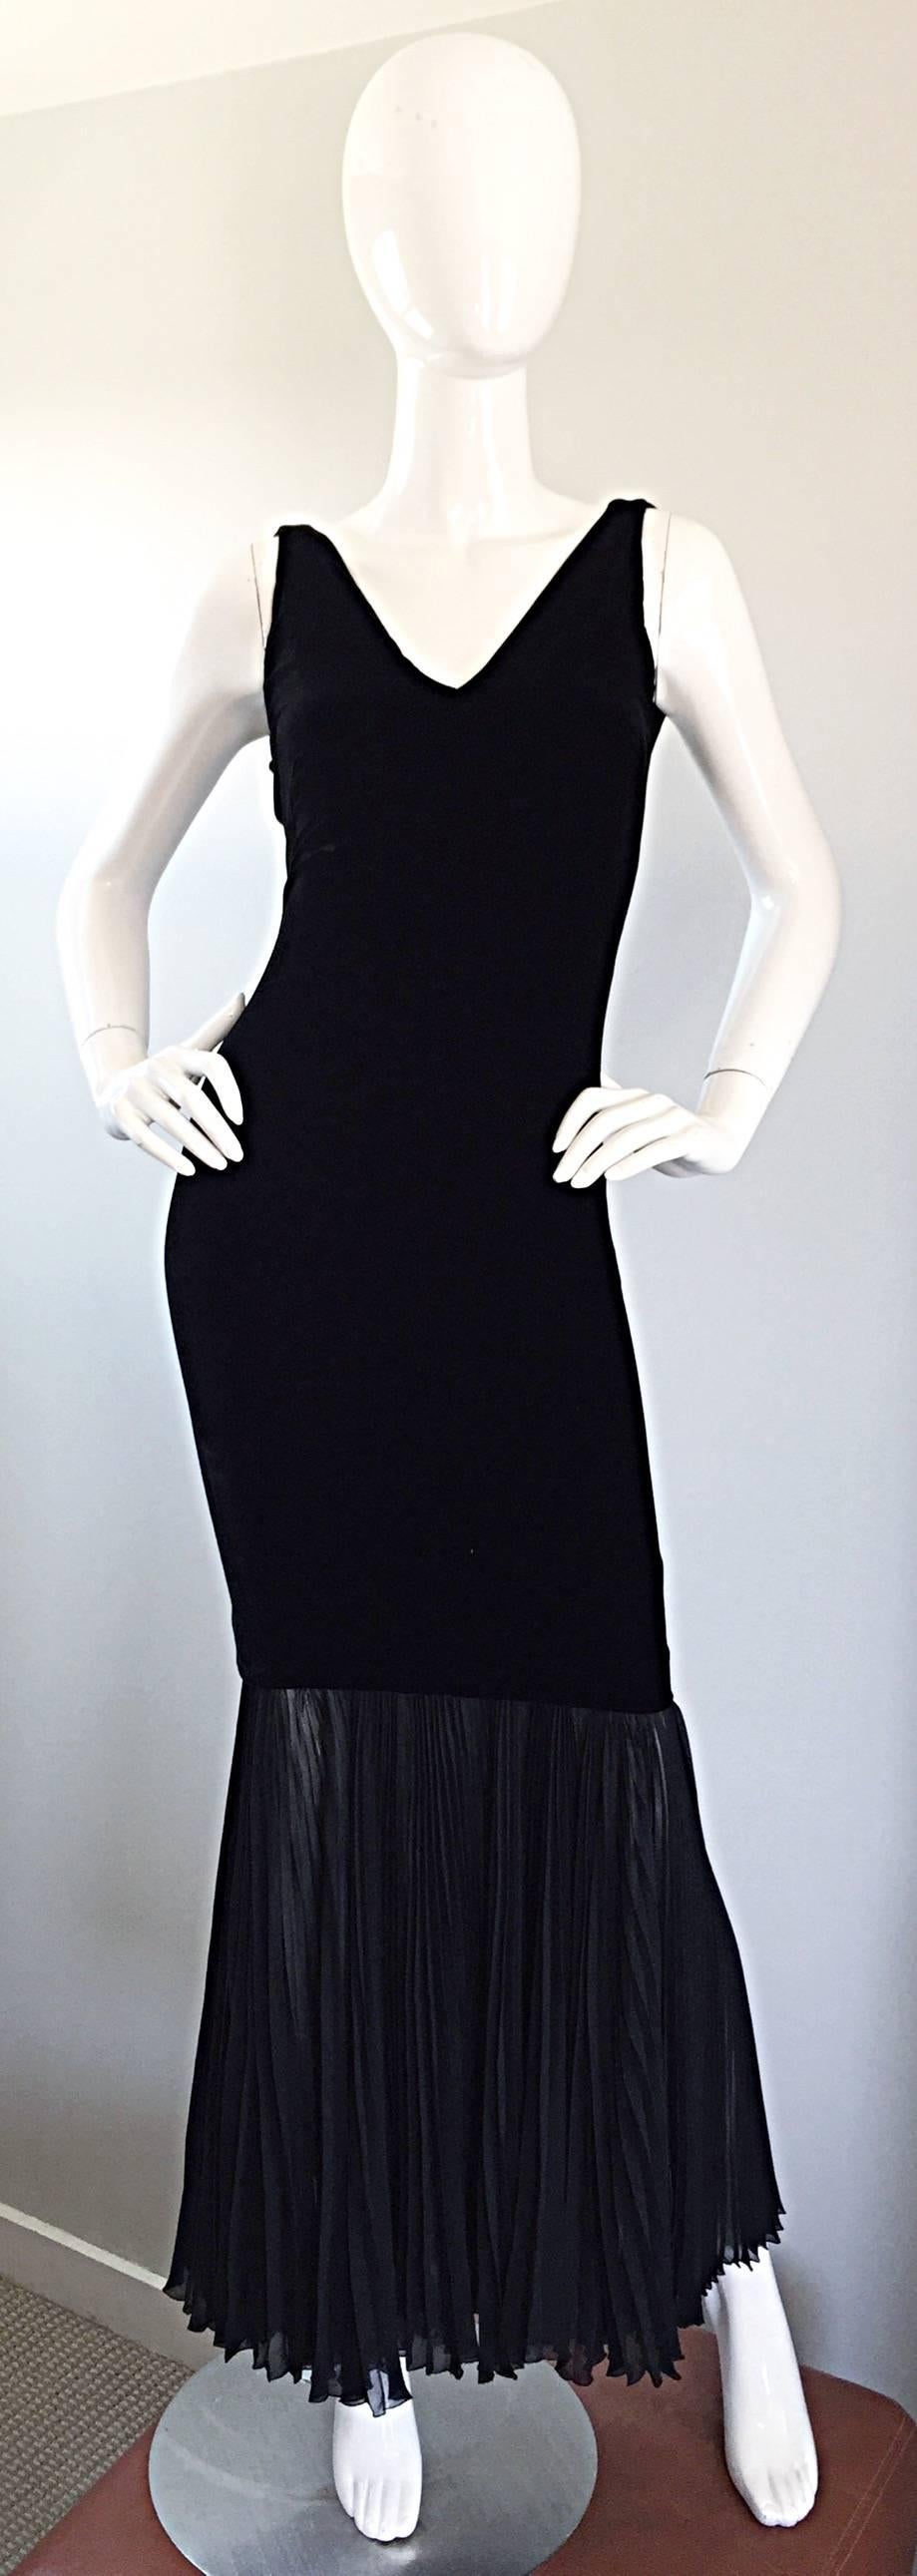 jean paul gaultier black dress